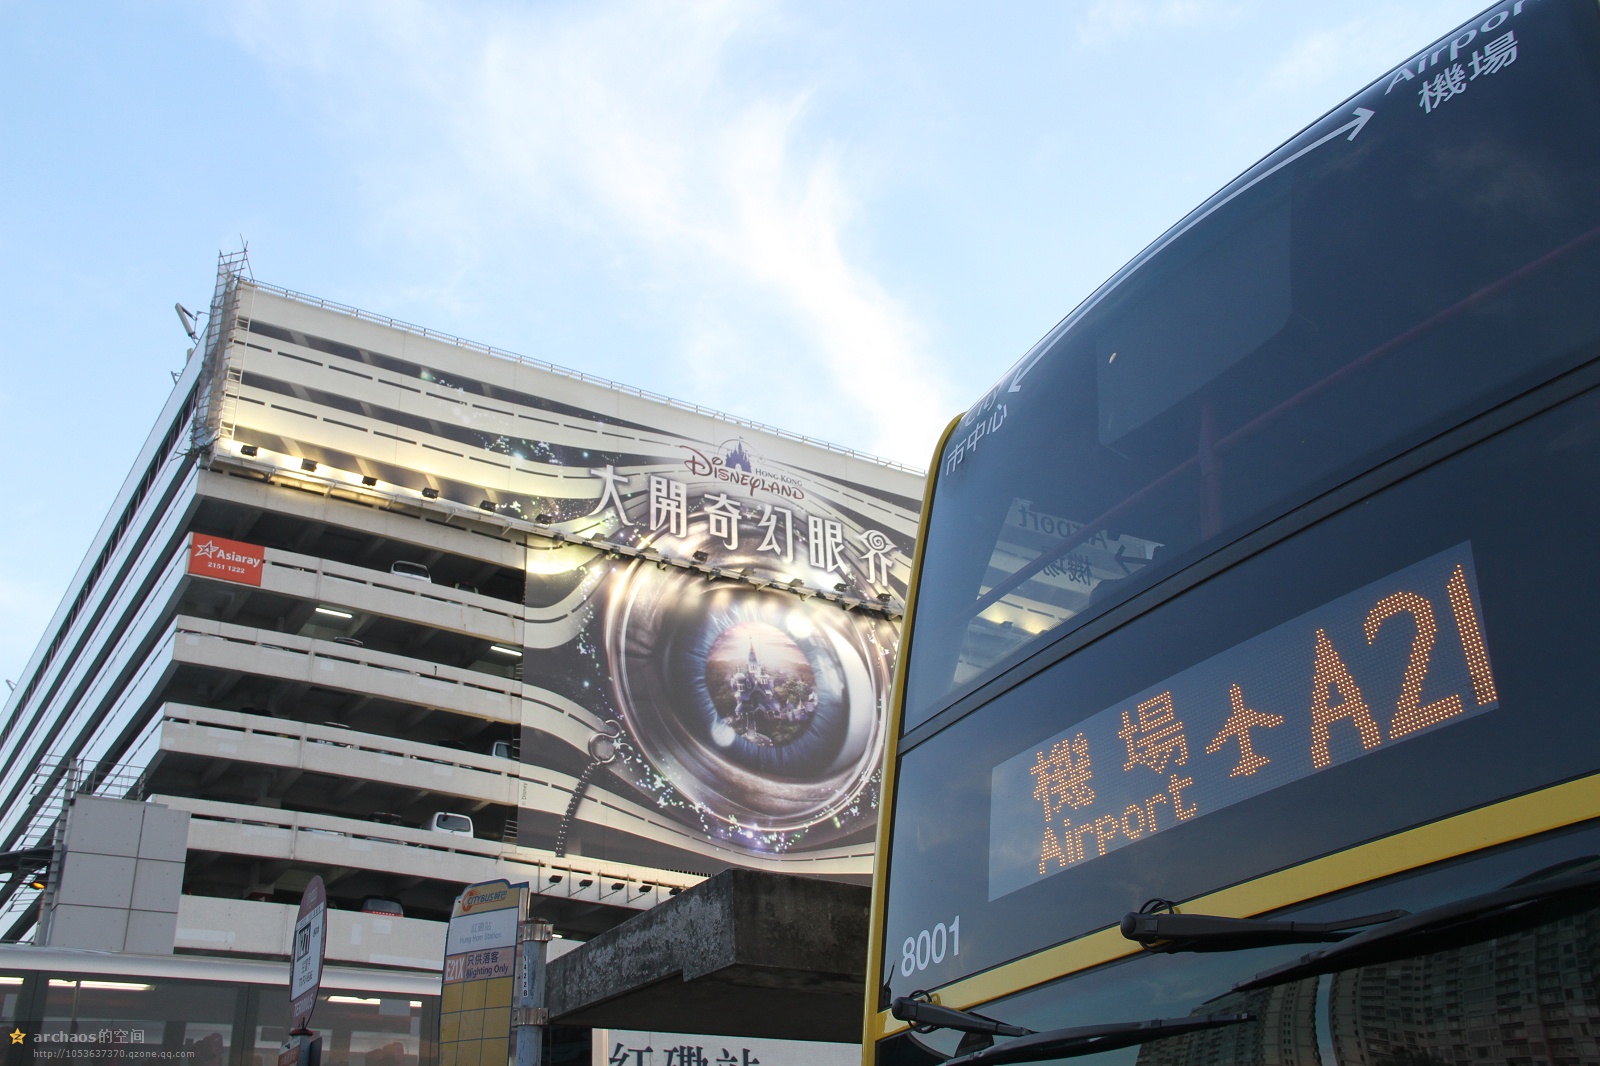 香港a21巴士路线